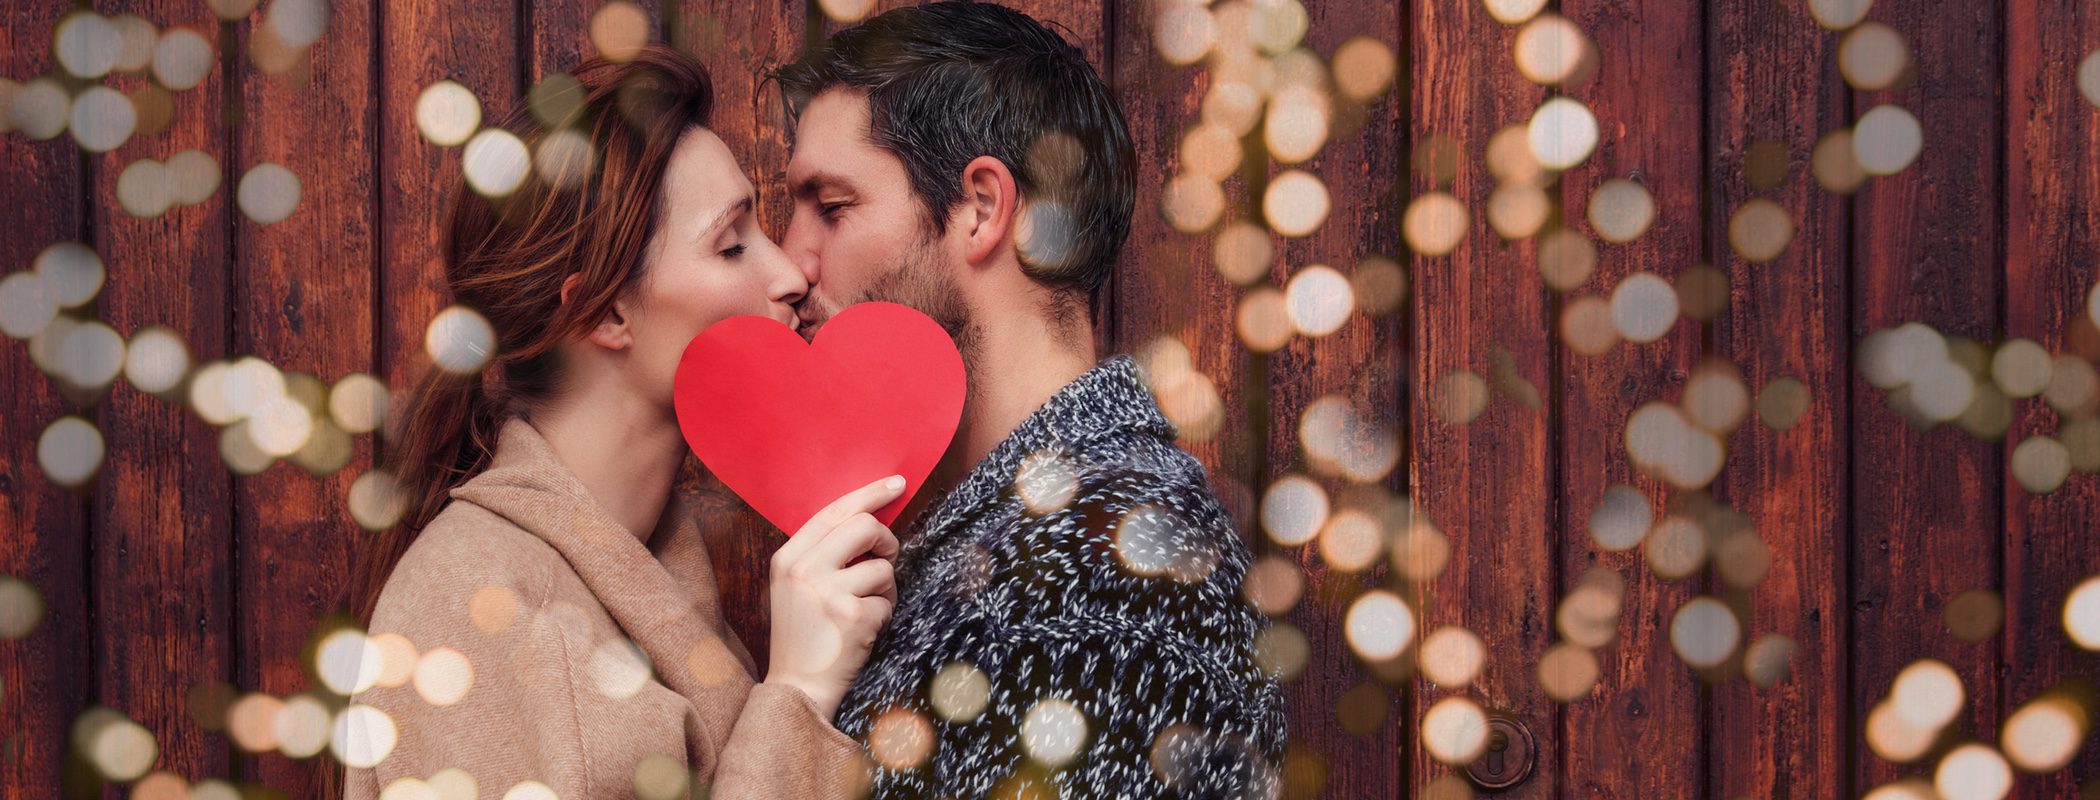 20 Frases de San Valentín para ella